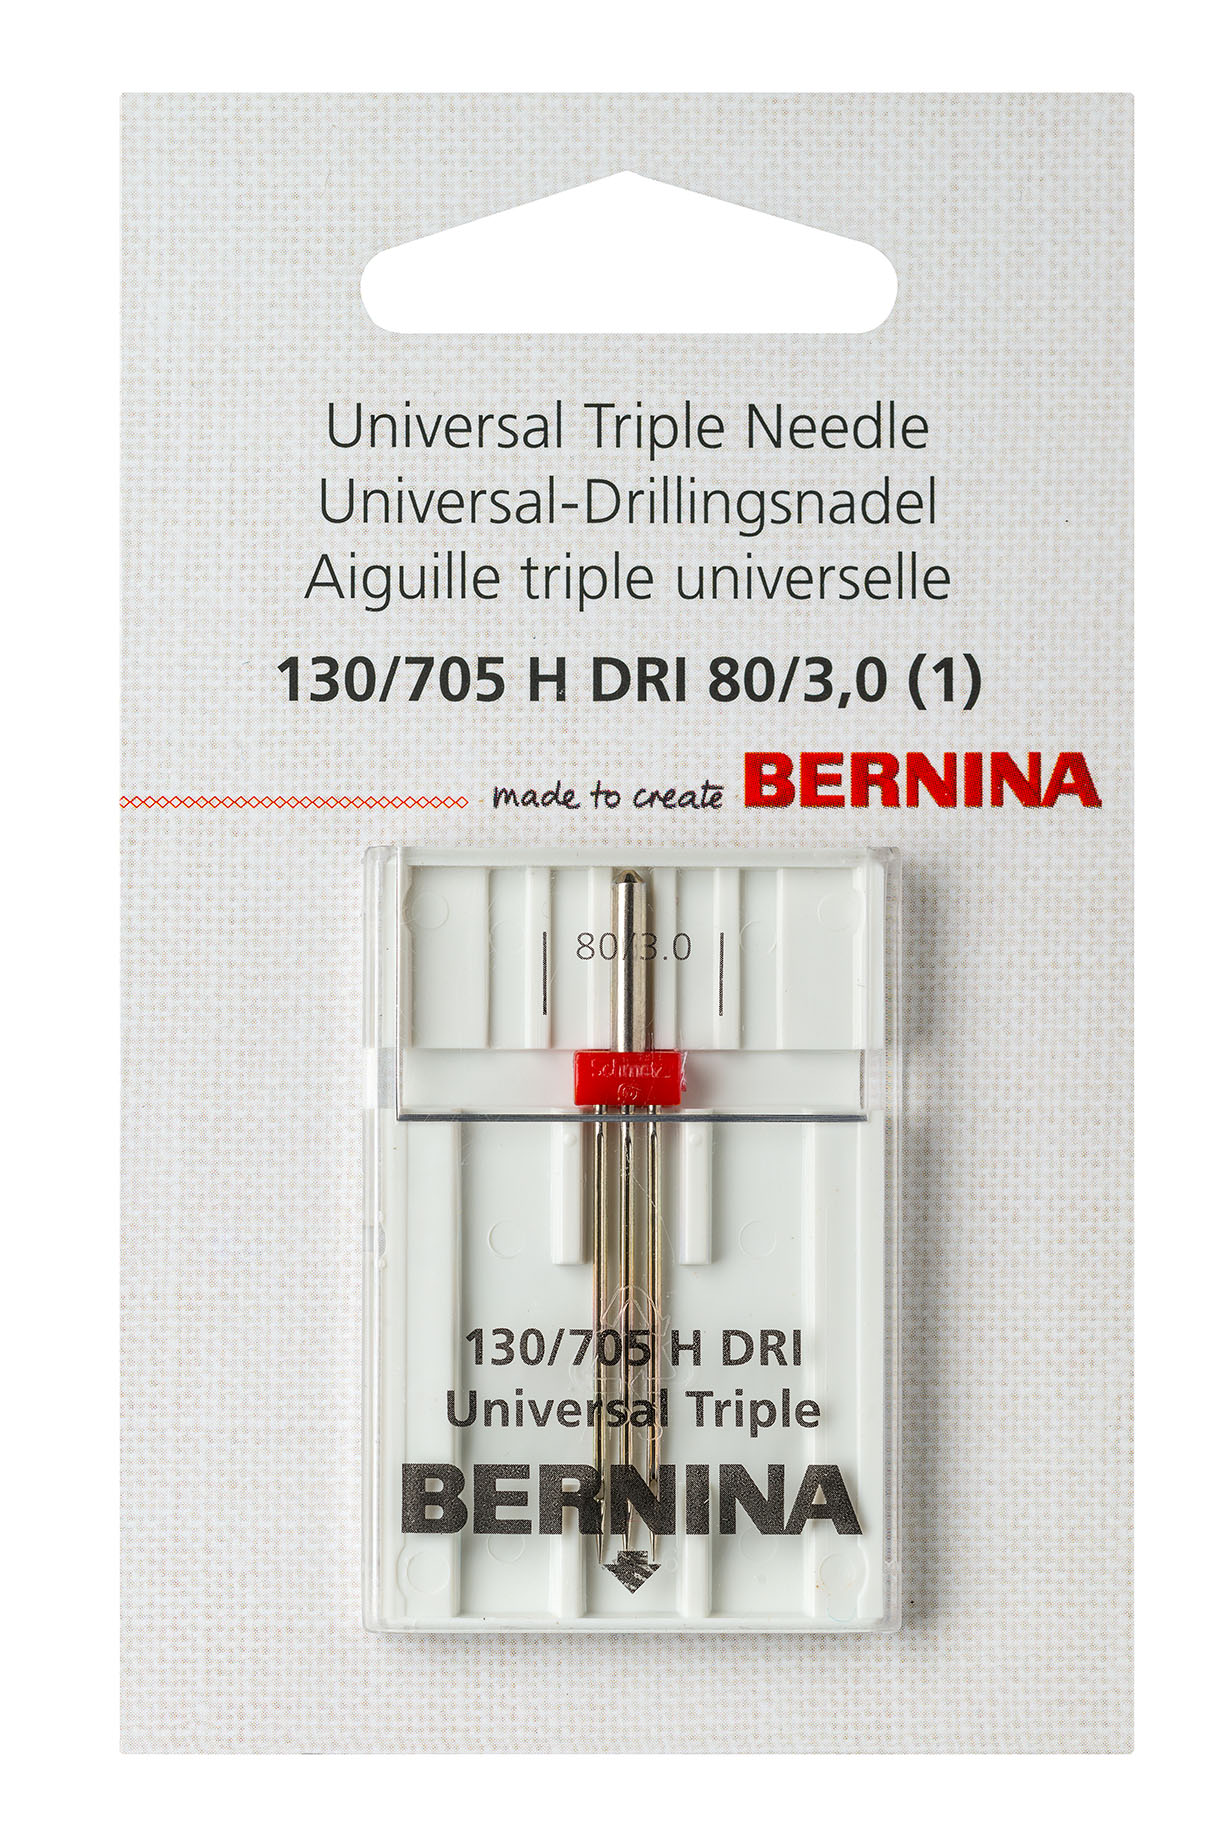 Universal triple needle